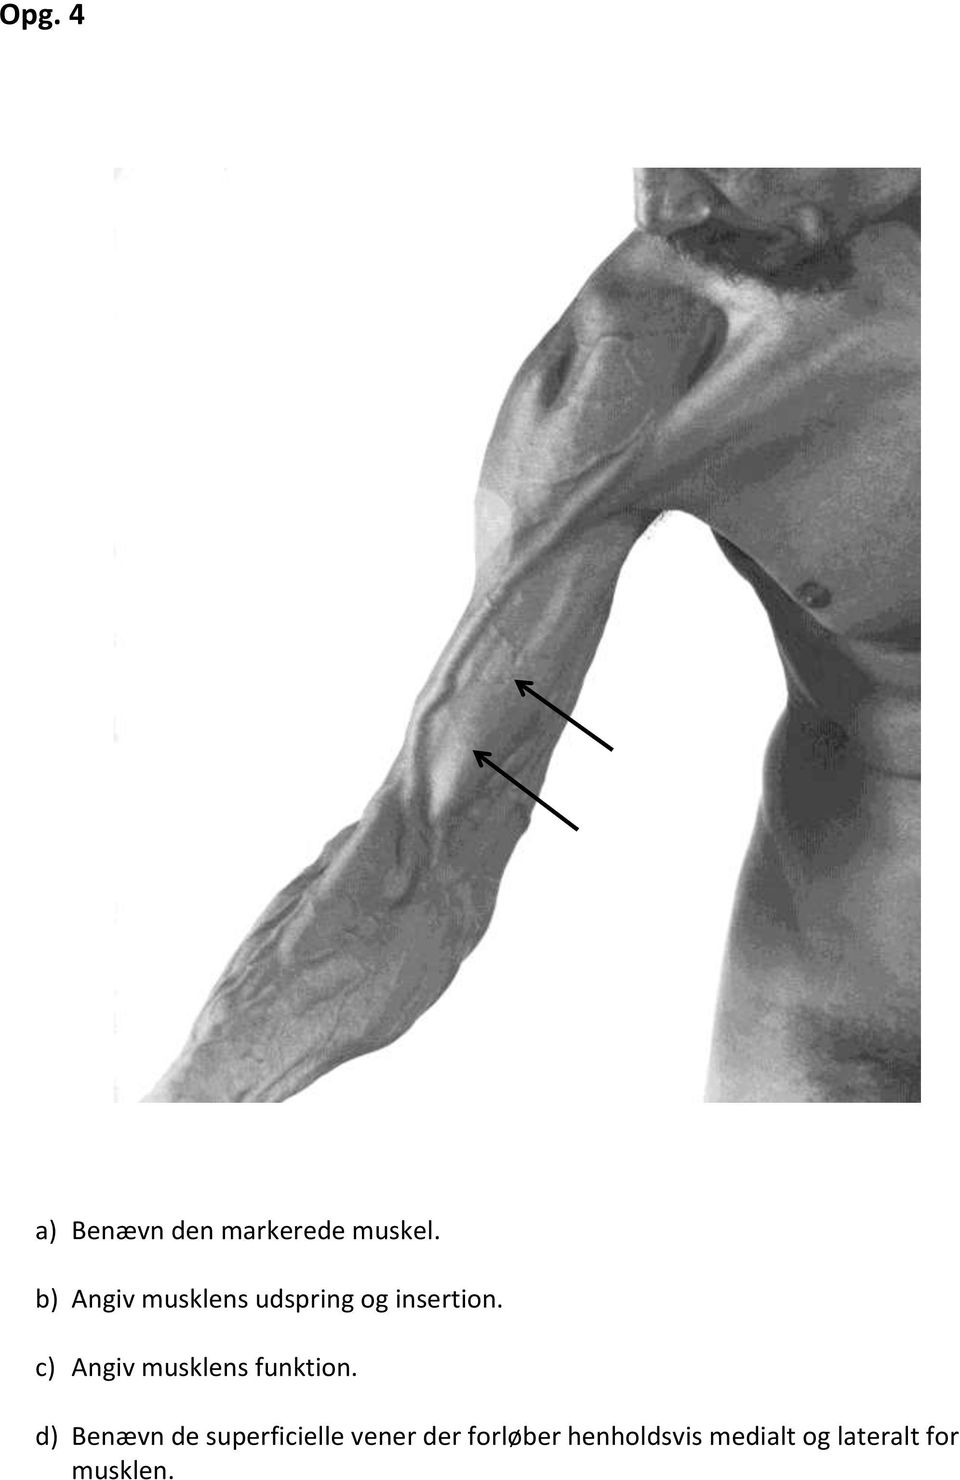 c) Angiv musklens funktion.